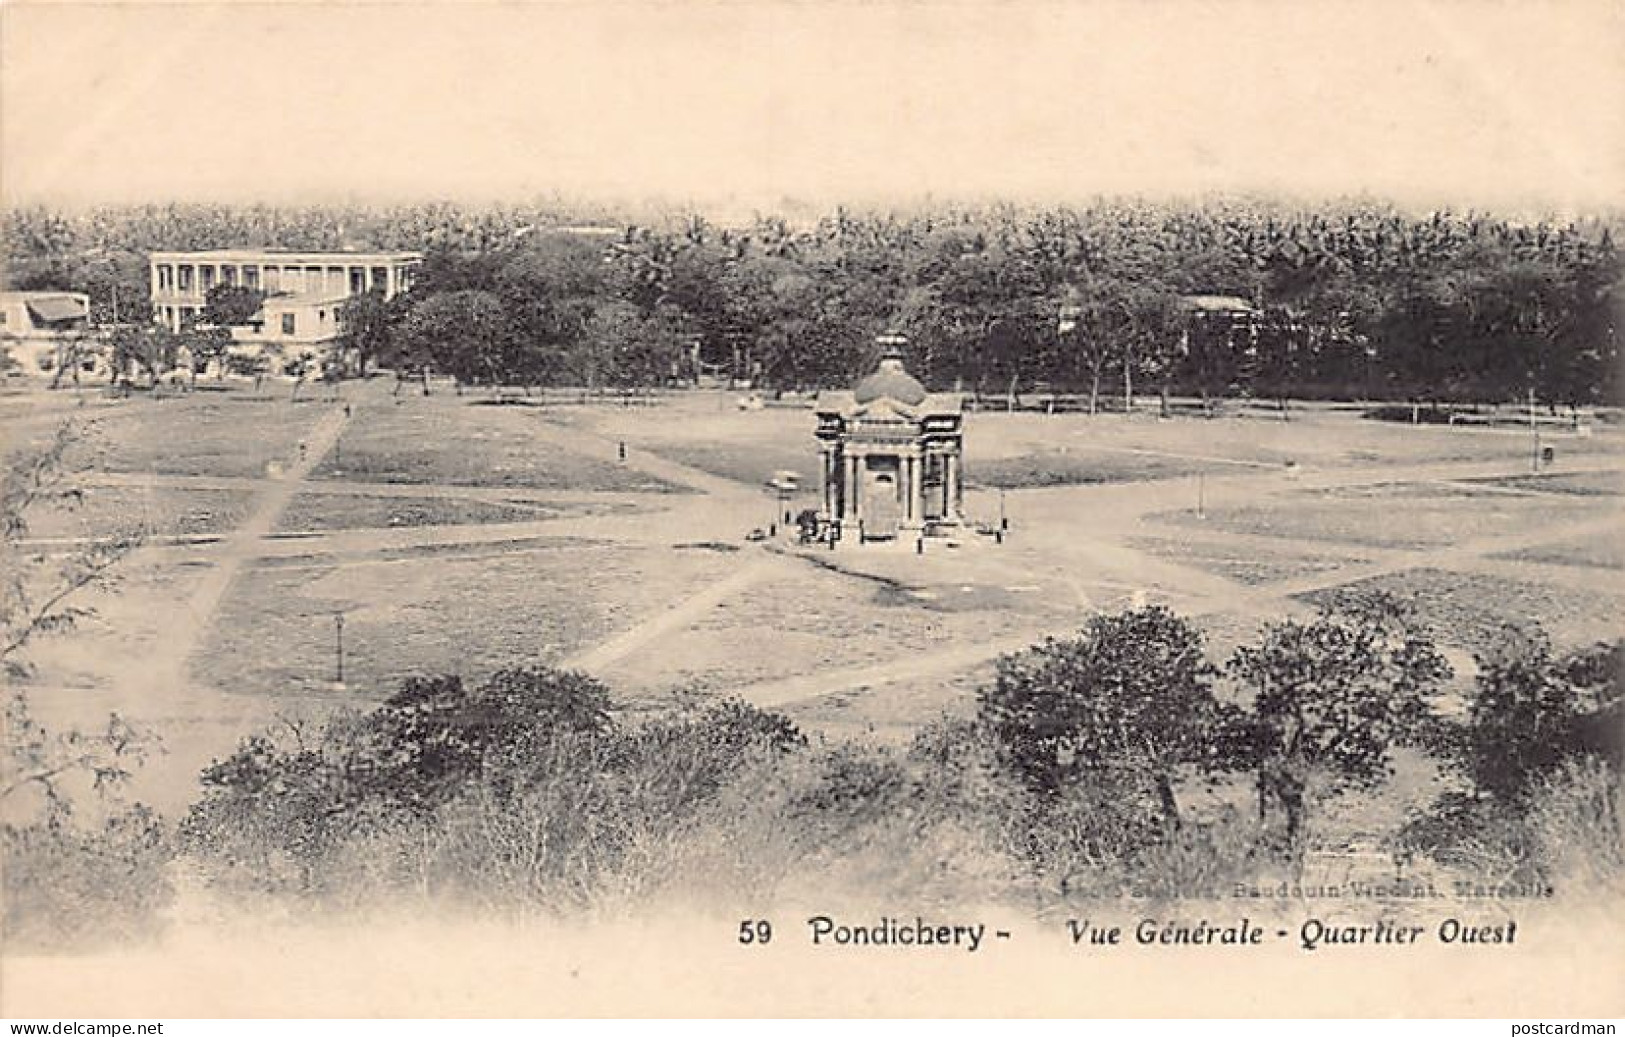 India - PUDUCHERRY Pondicherry - General View, West Quarter - Publ. Vincent 59 - Inde